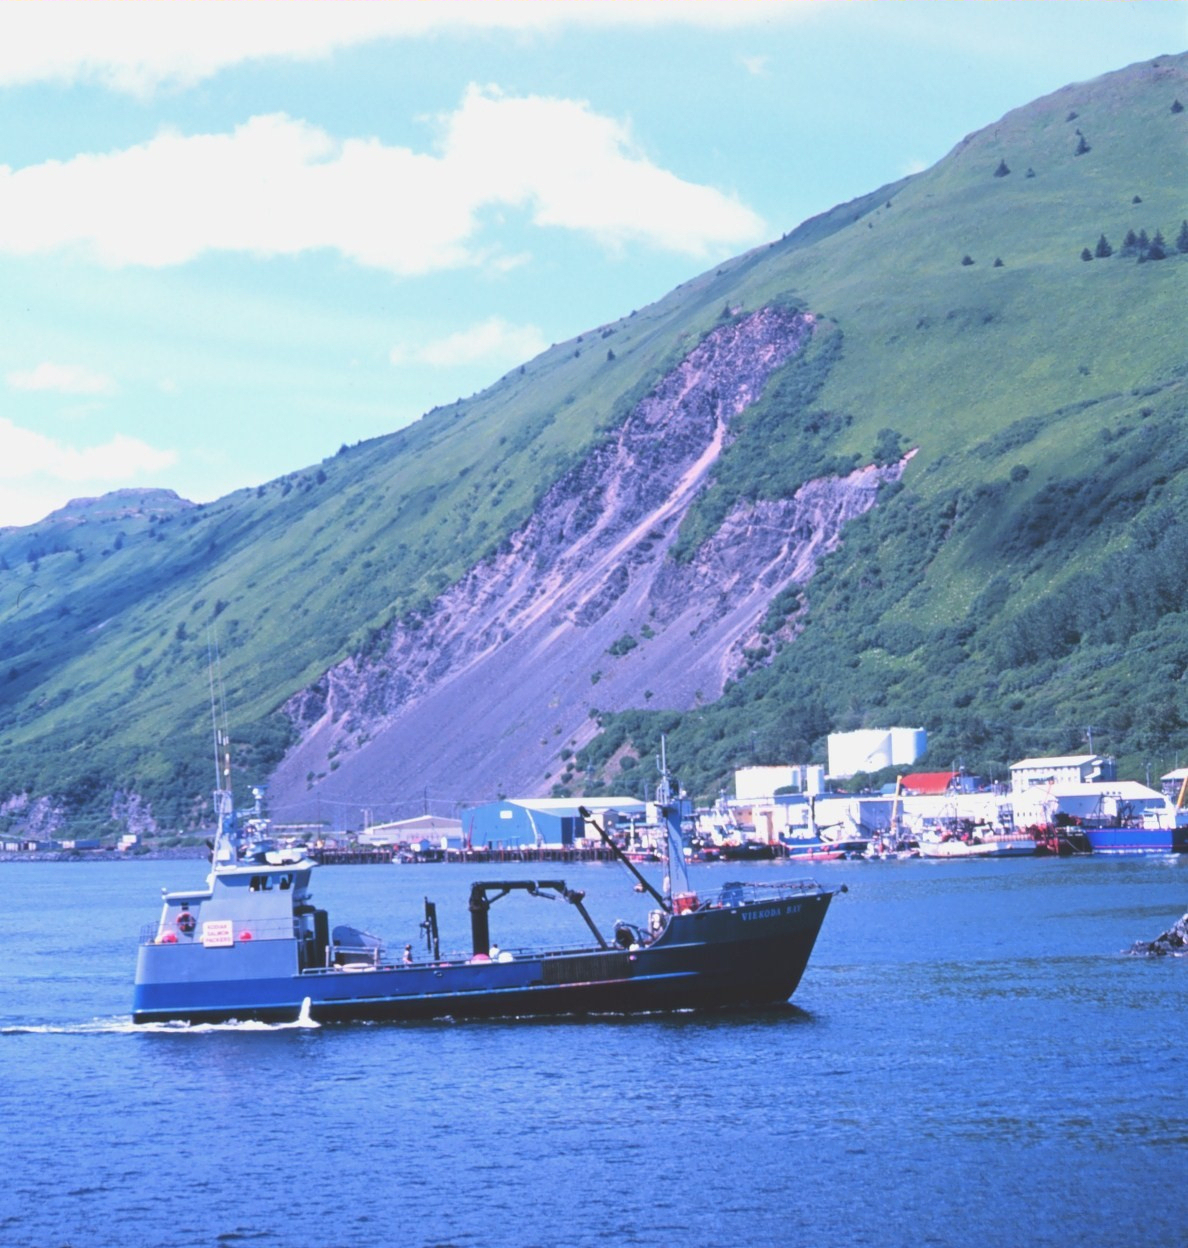 Fishing vessel underway in Kodiak Harbor